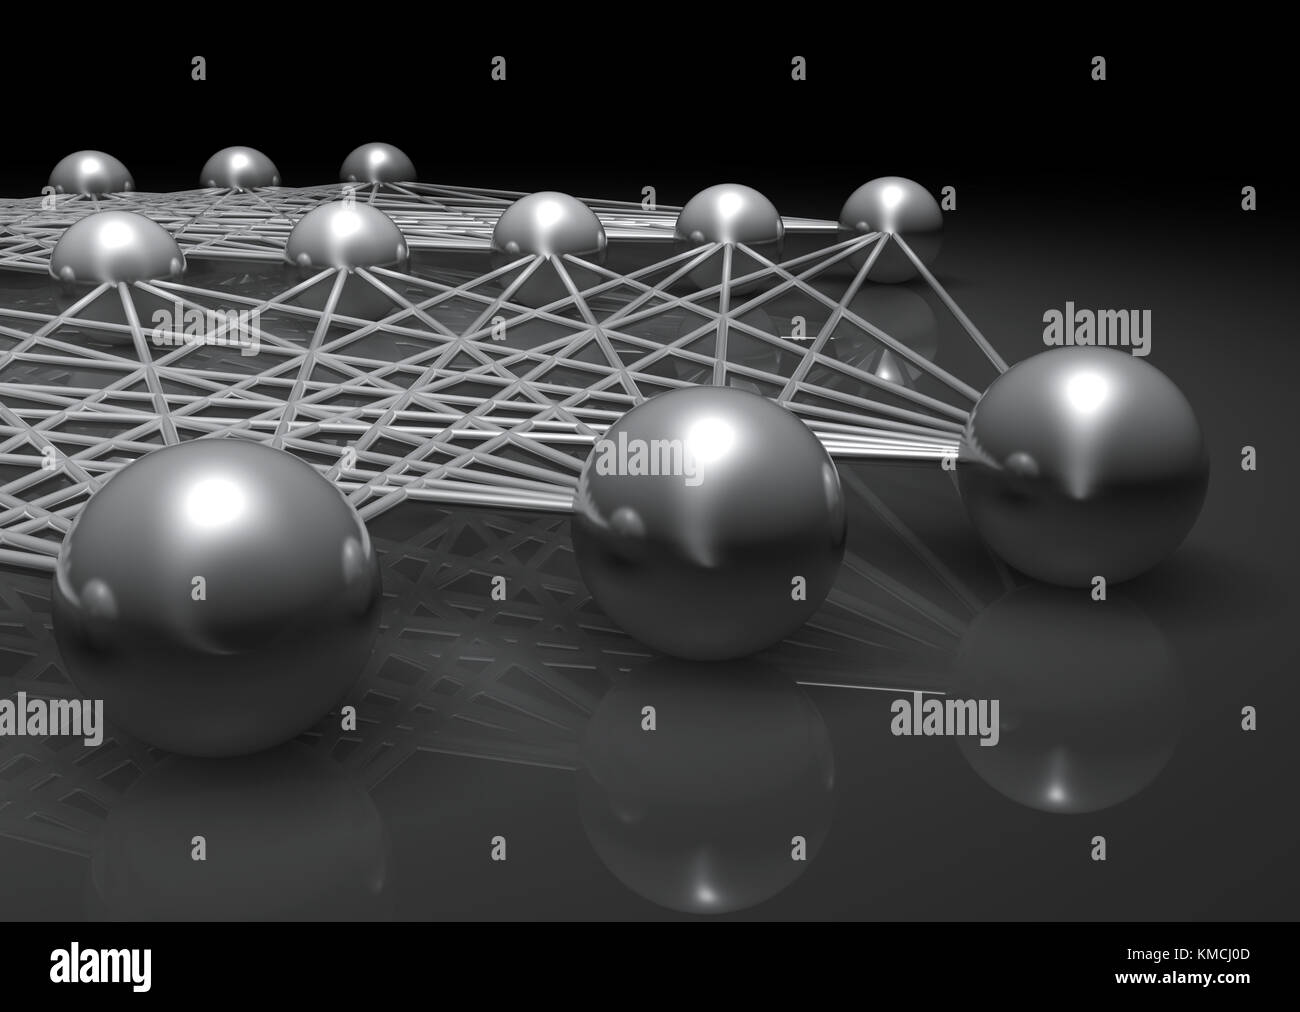 Künstliche flachen neuronales Netzwerk Fragment, cg Abbildung mit Schaltplan metallische Modell, 3D-Rendering Stockfoto